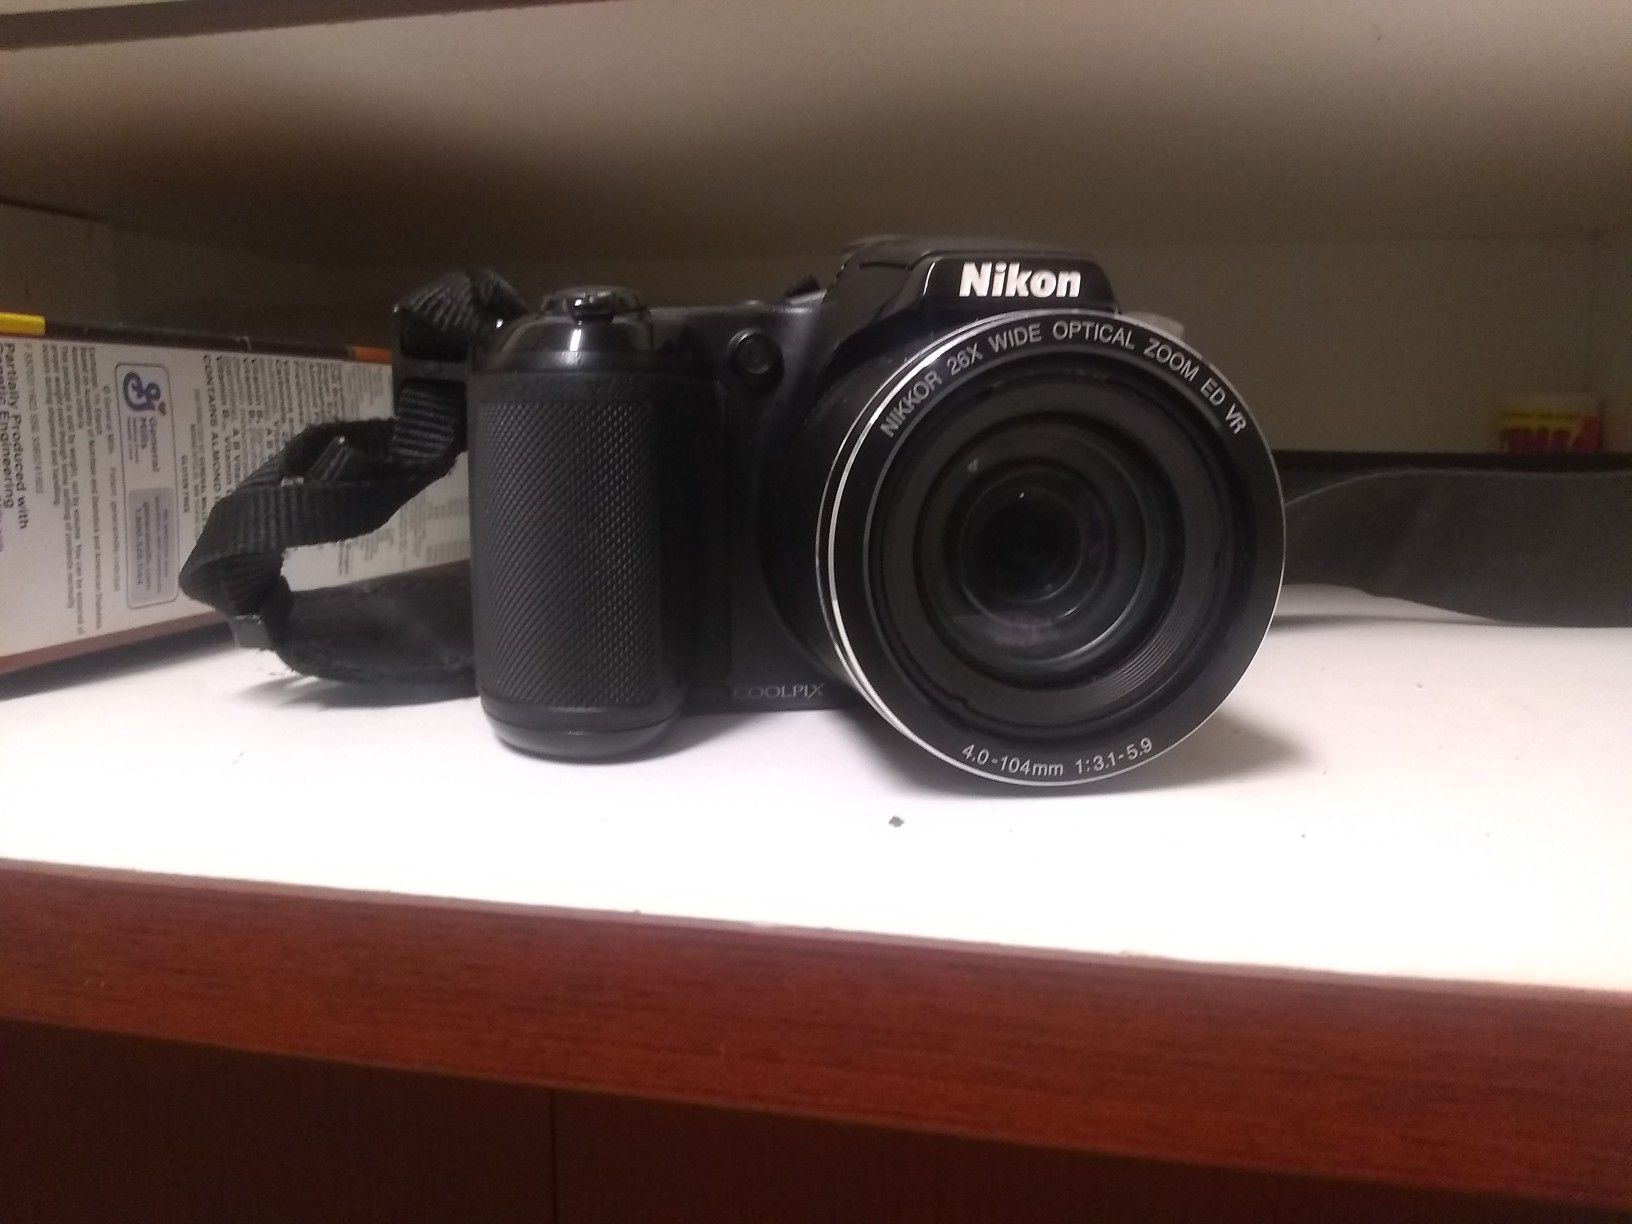 Nikon CoolPix digital camera